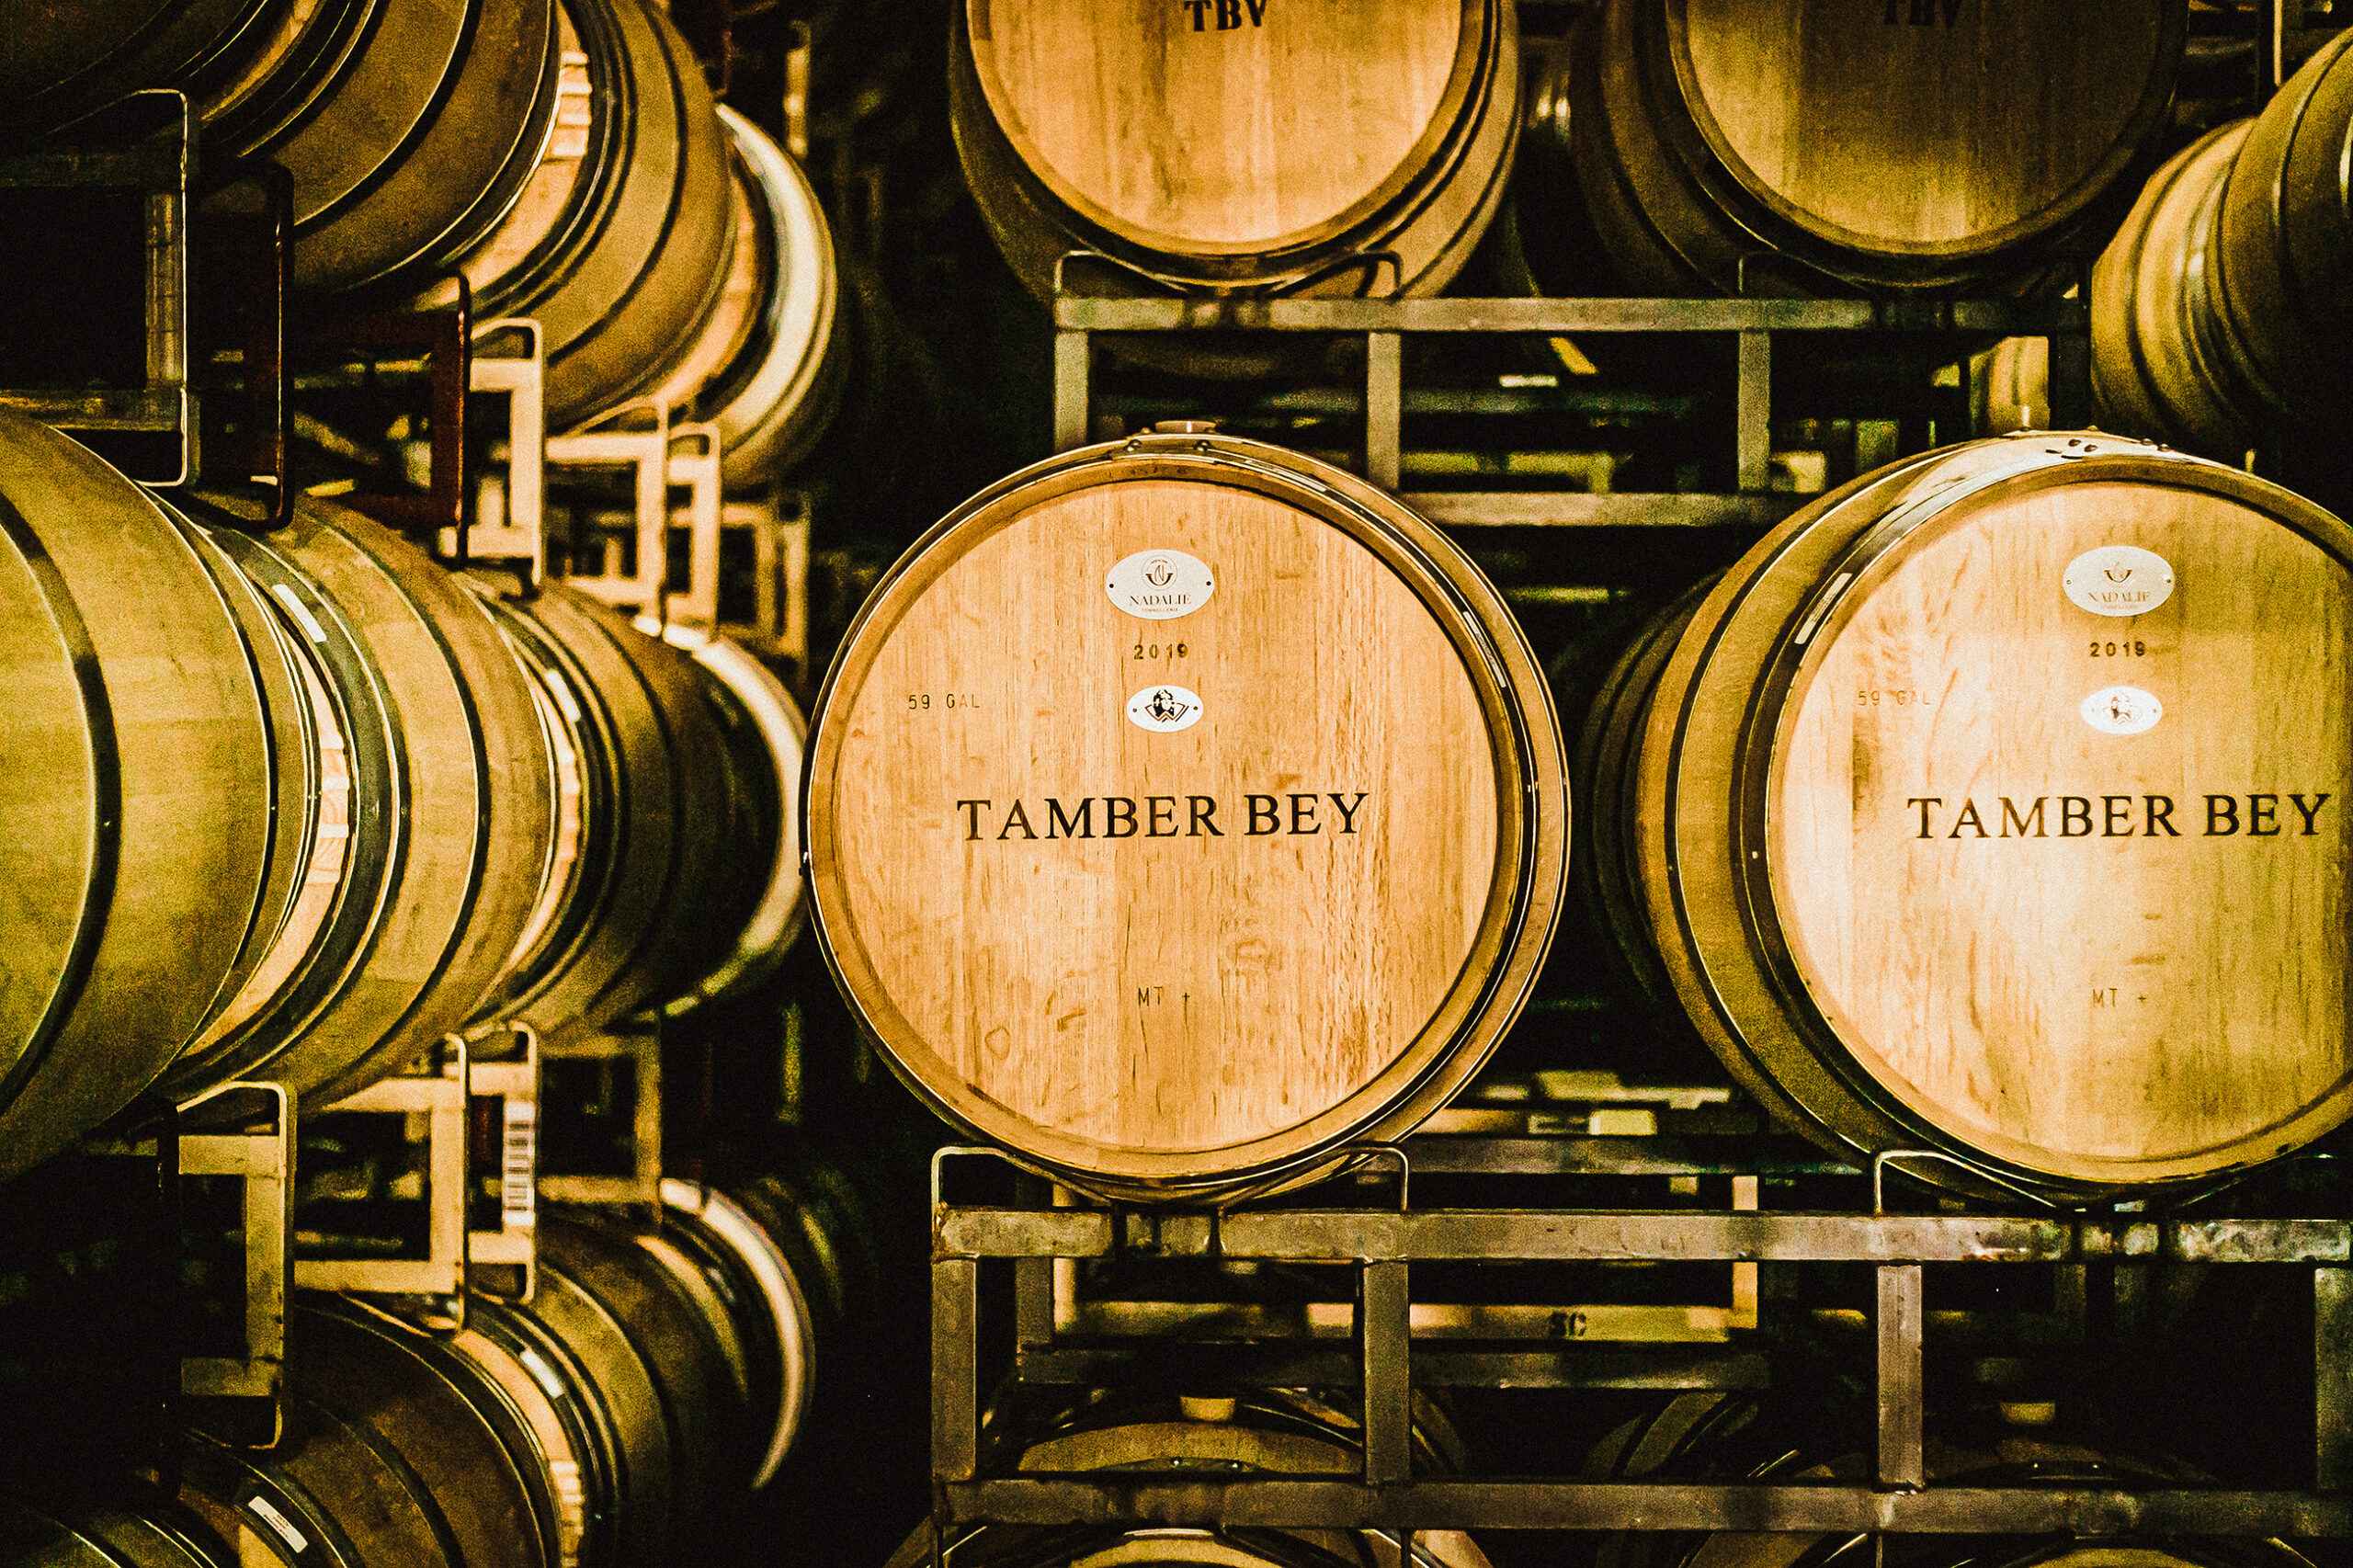 Tamber Bey barrels